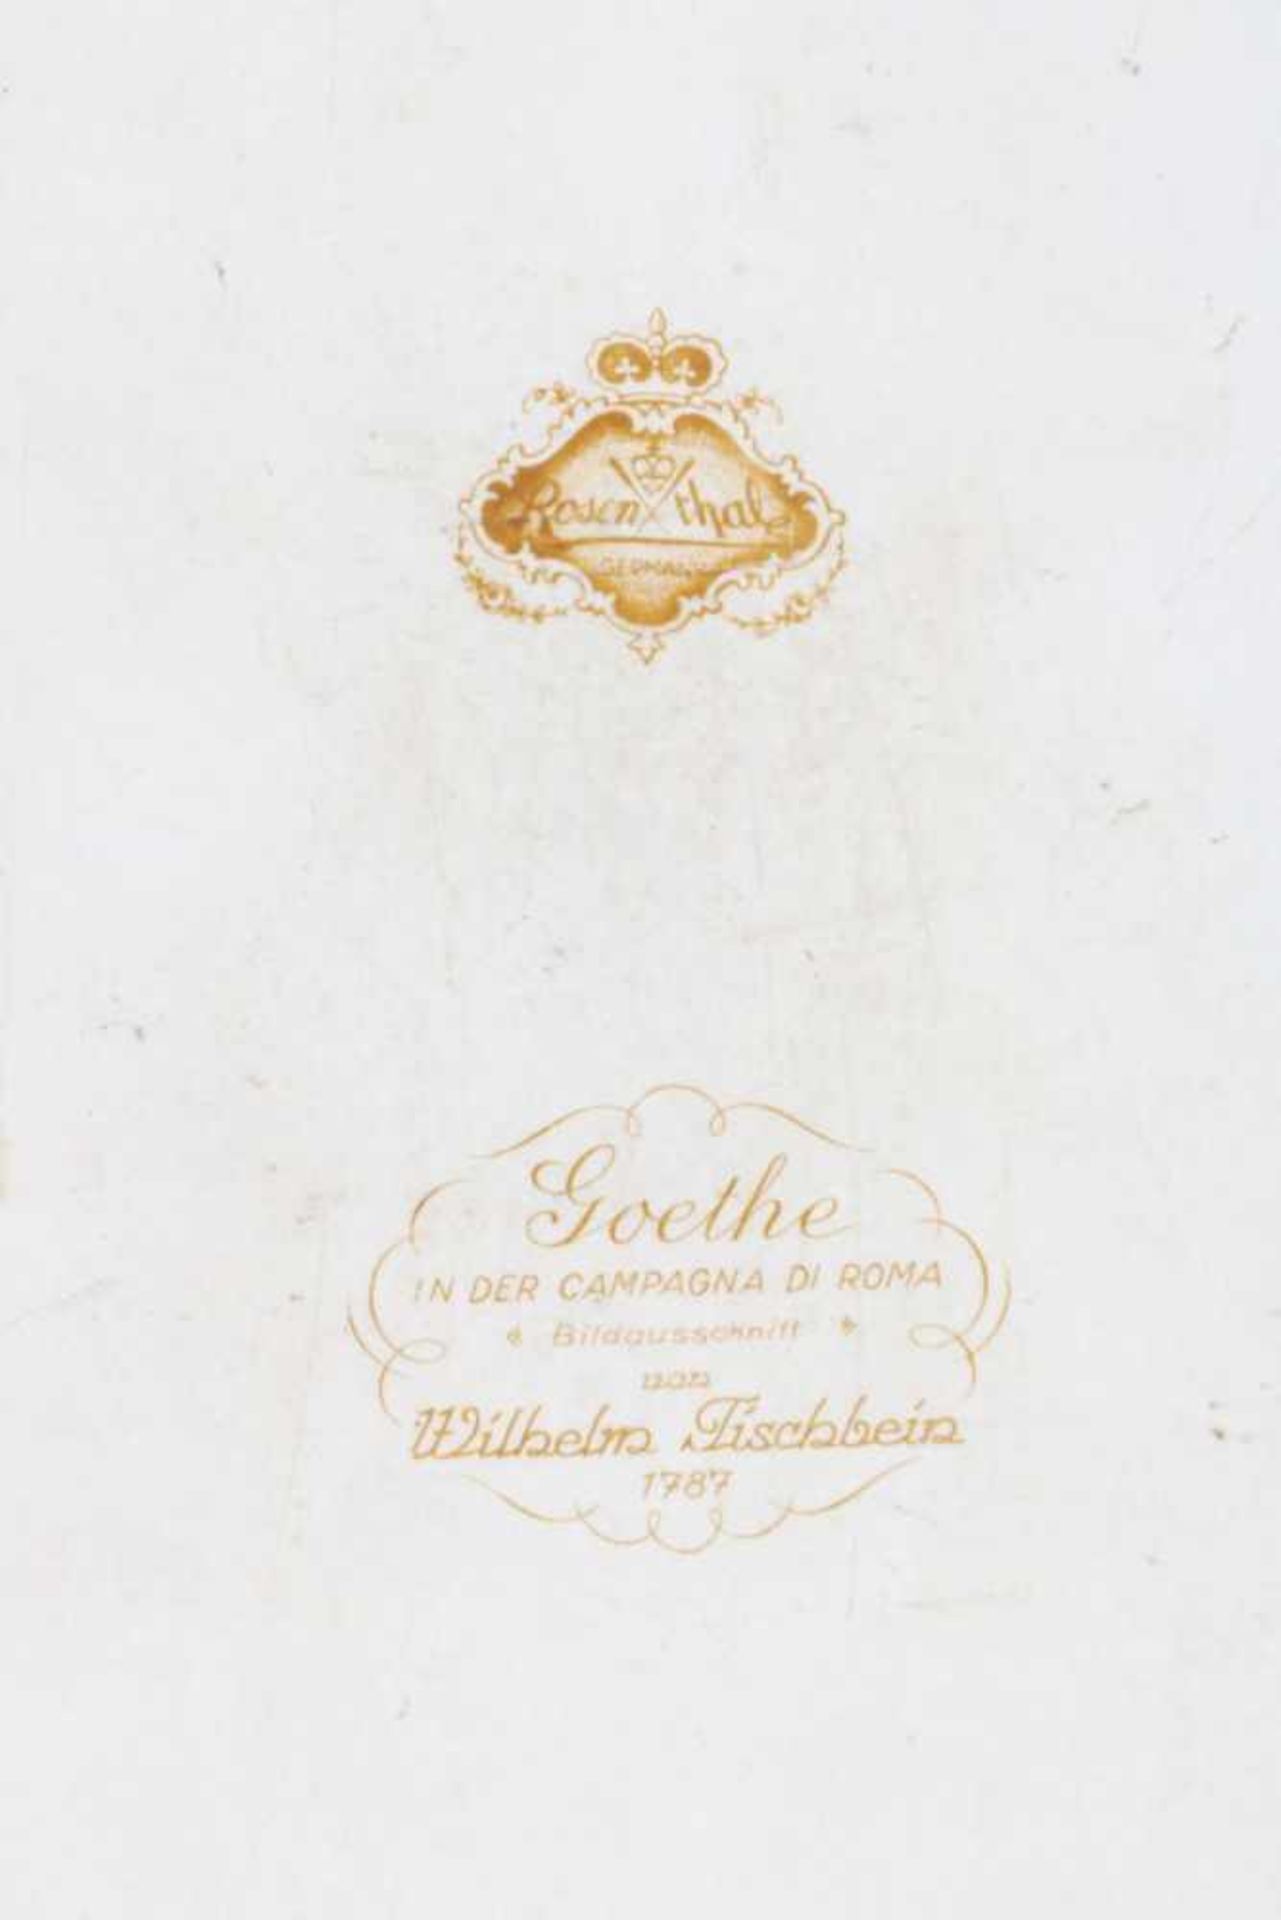 ROSENTHAL PorzellangemäldePorträt Goethes (Bildausschnitt nach Wilhelm Tischbeins ¨Goethe in der - Image 2 of 2